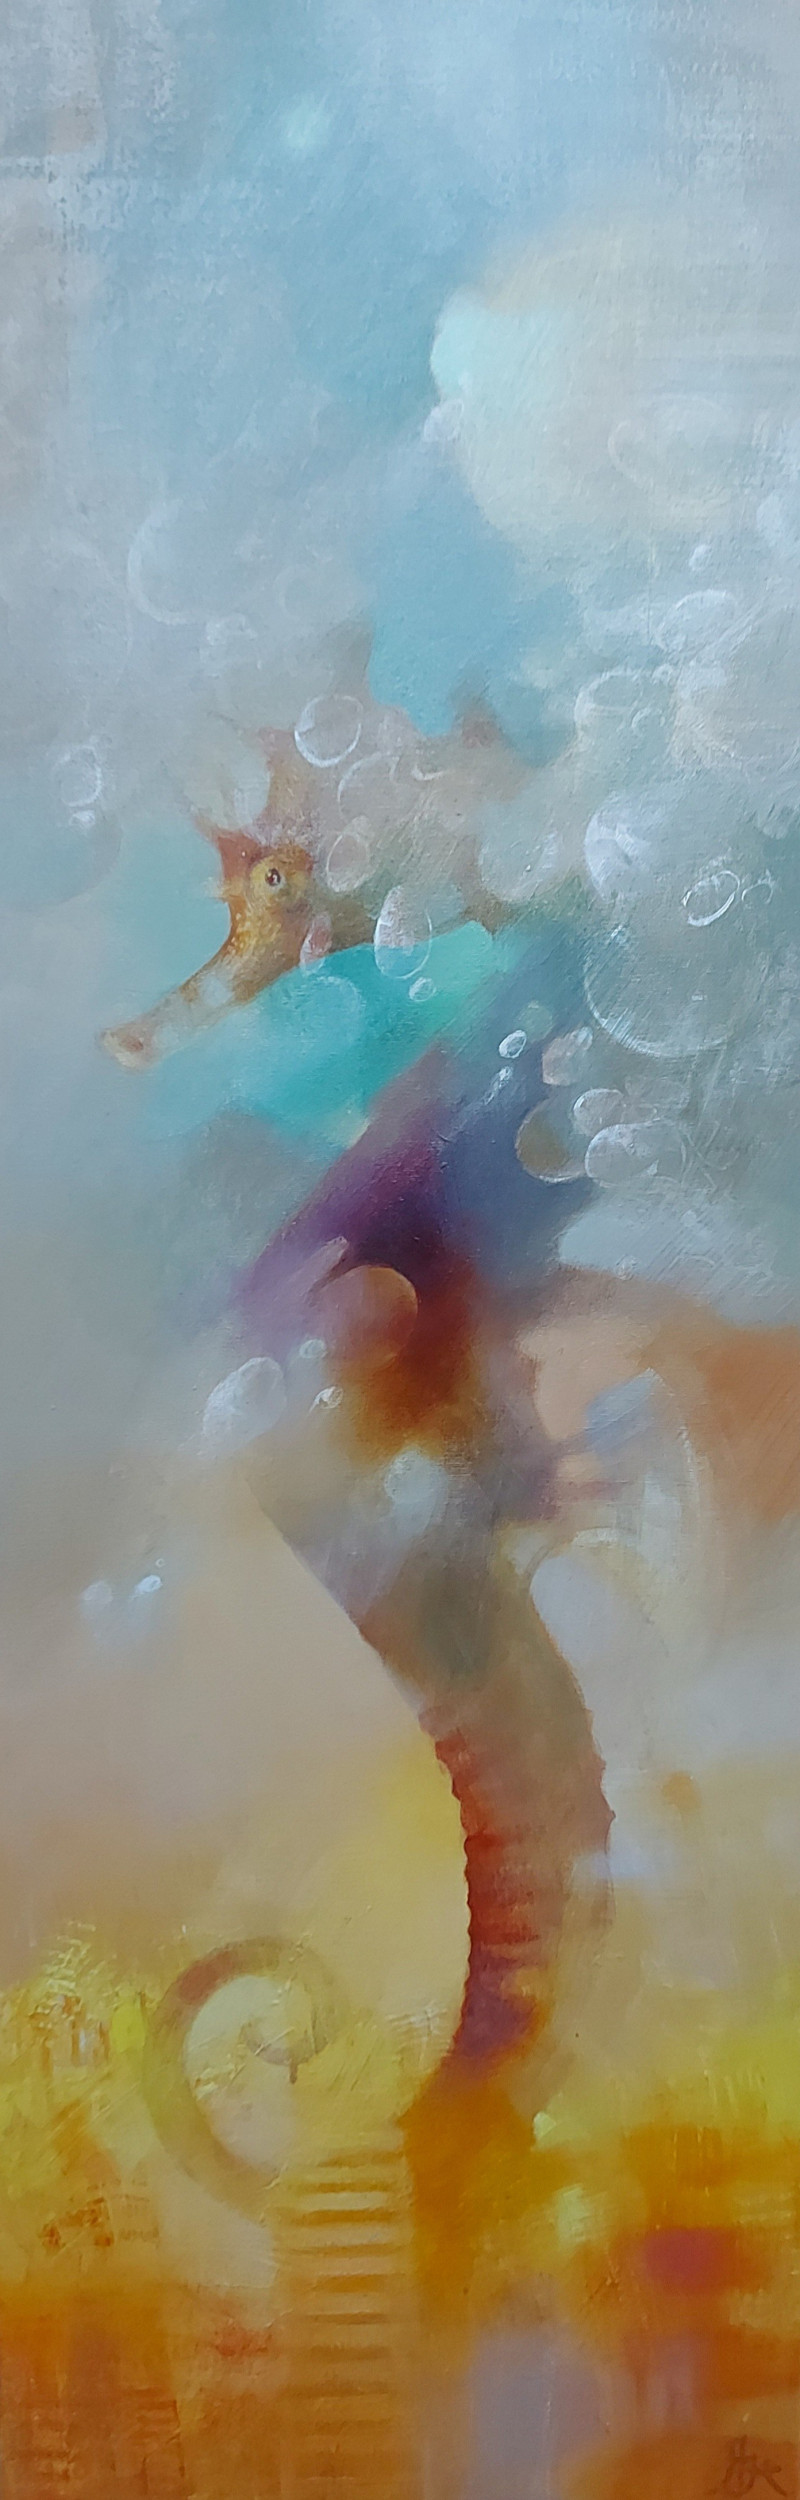 Aistė Jurgilaitė tapytas paveikslas Po vandeniu, Animalistiniai paveikslai , paveikslai internetu